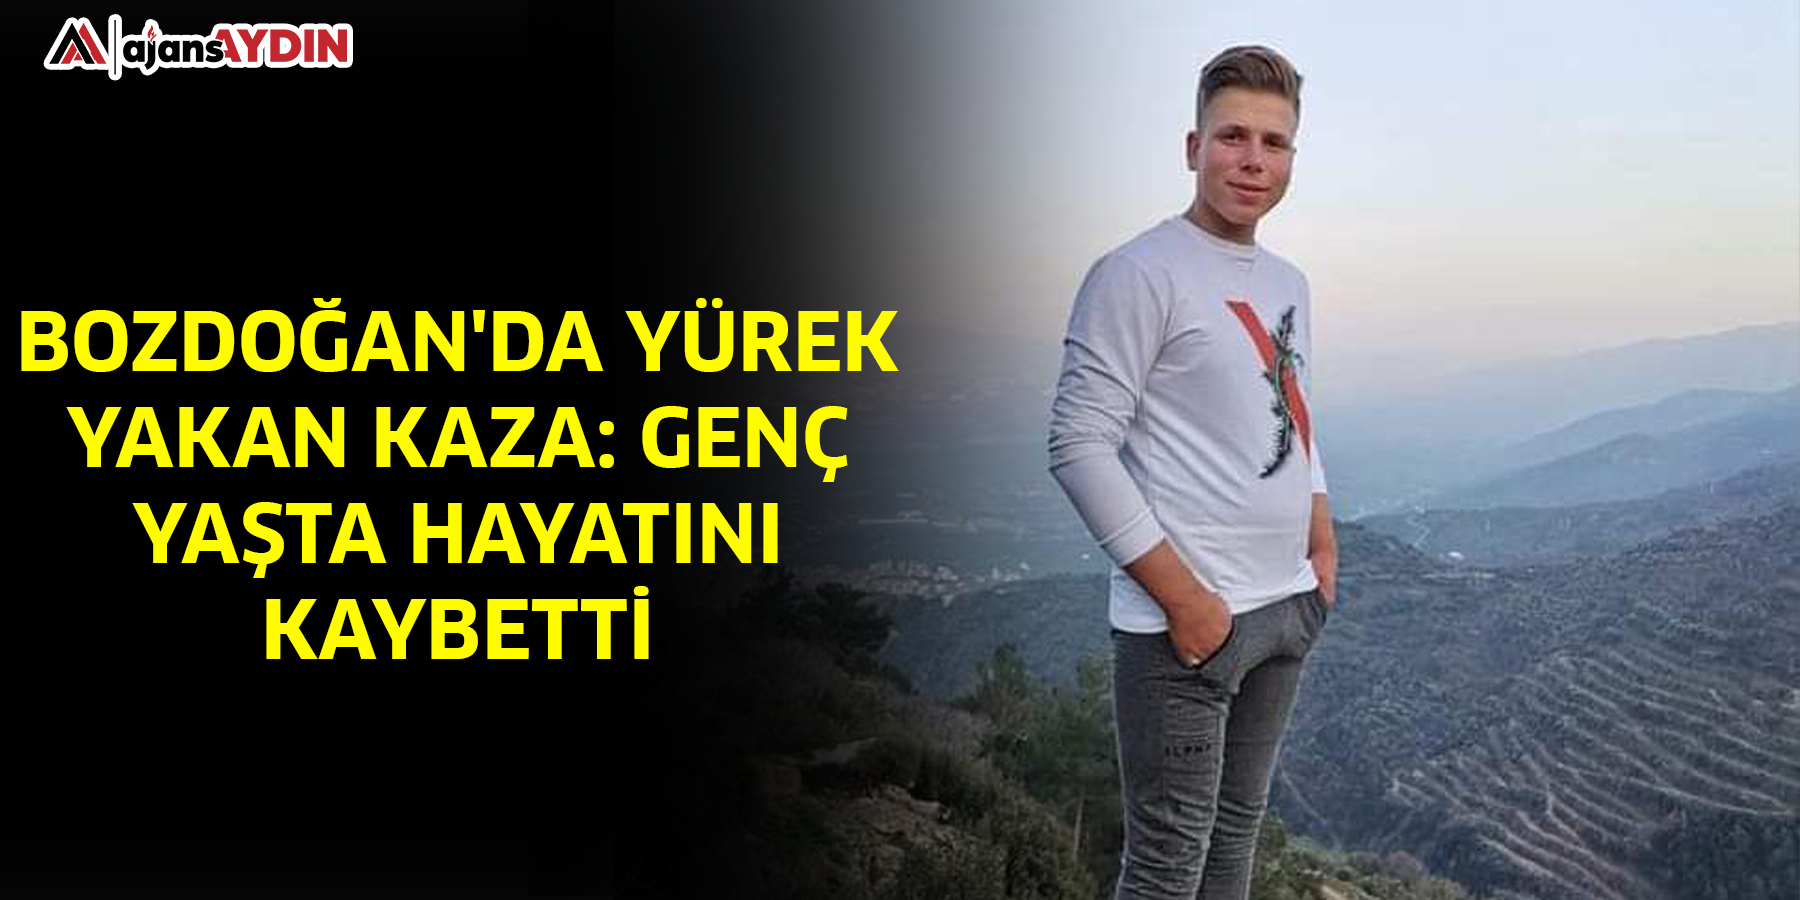 Bozdoğan'da yürek yakan kaza: Genç yaşta hayatını kaybetti